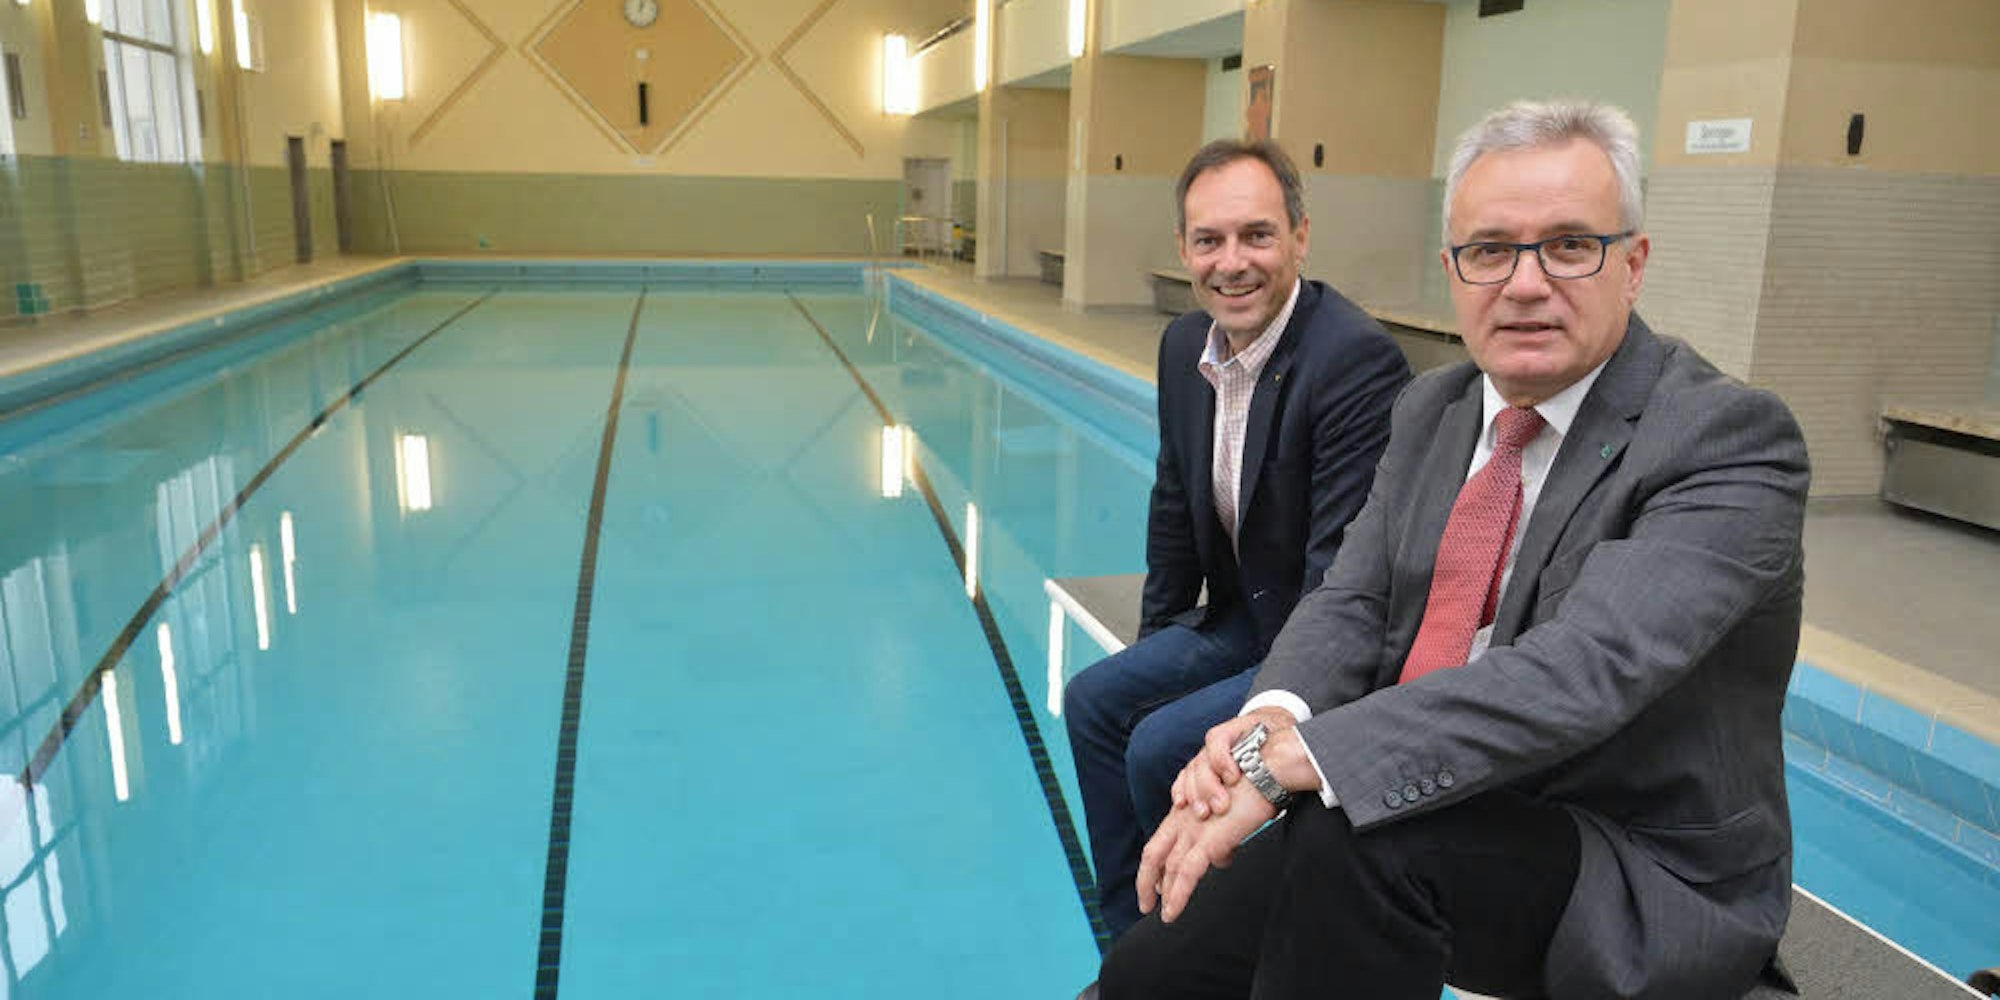 Die Geschäftsführer Manfred Habrunner und Bernd Martmann (v. l.) zeigen sich erleichtert über die Reparatur des Bades.